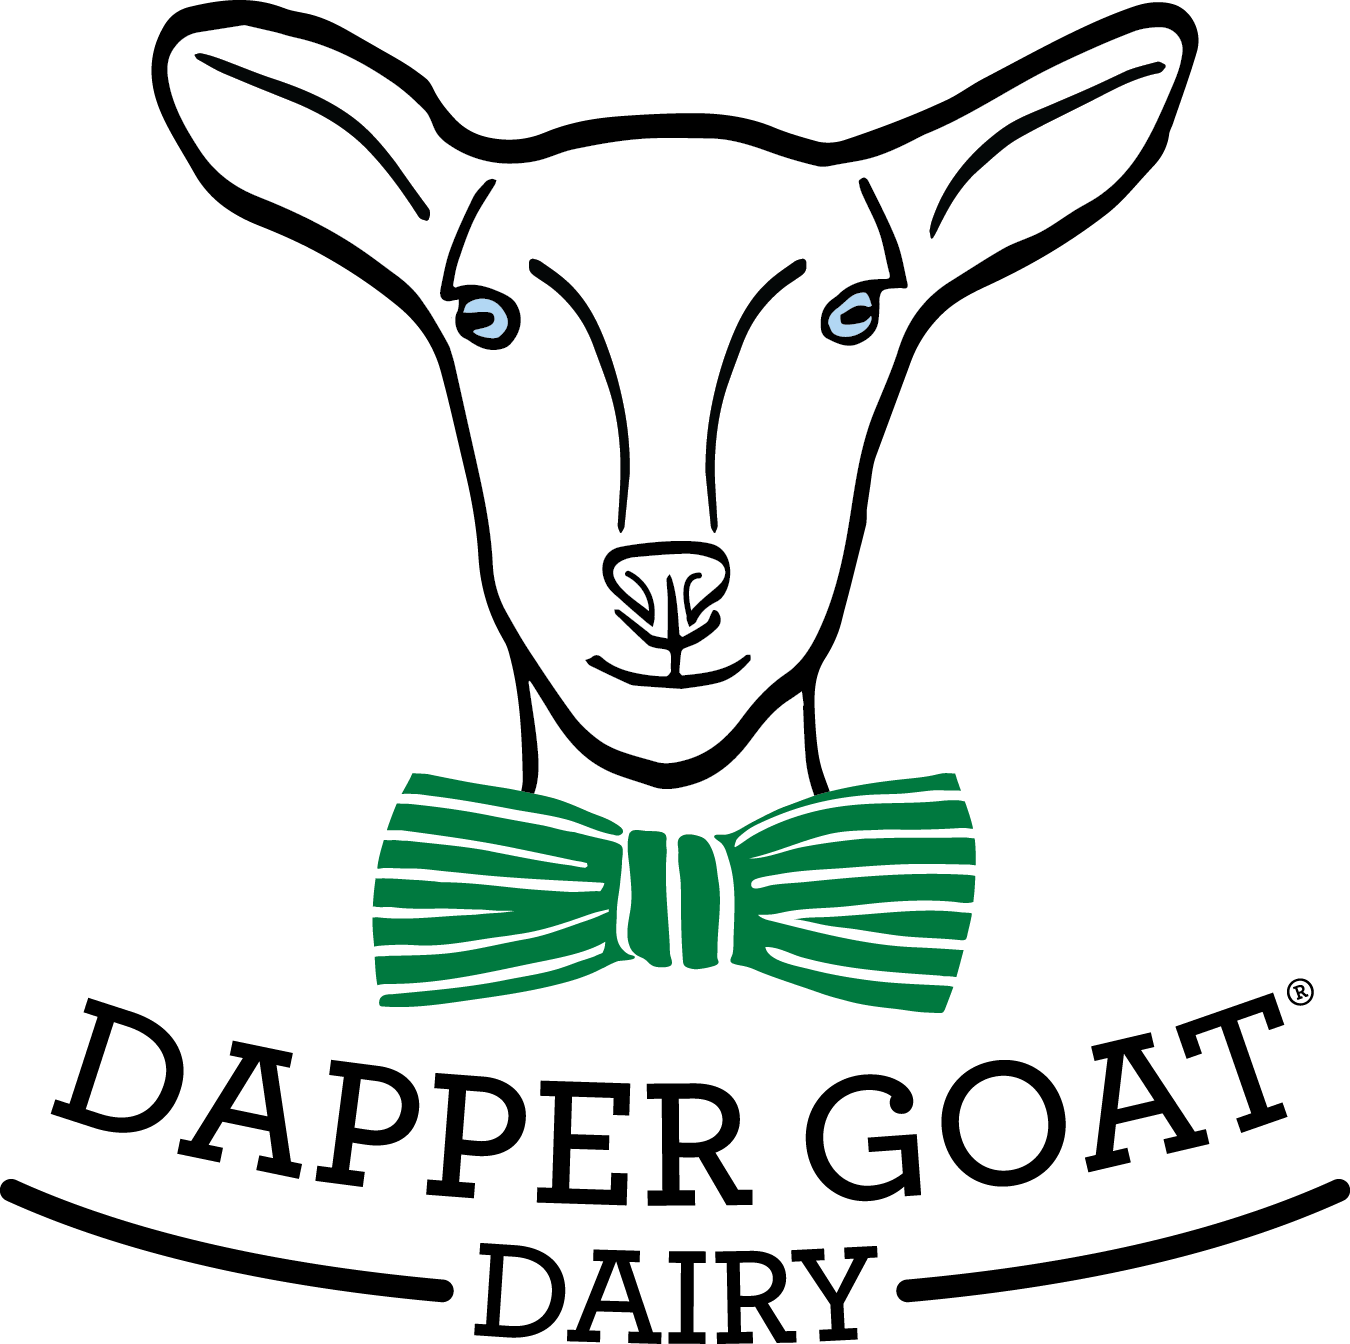 The Dapper Goat Dairy